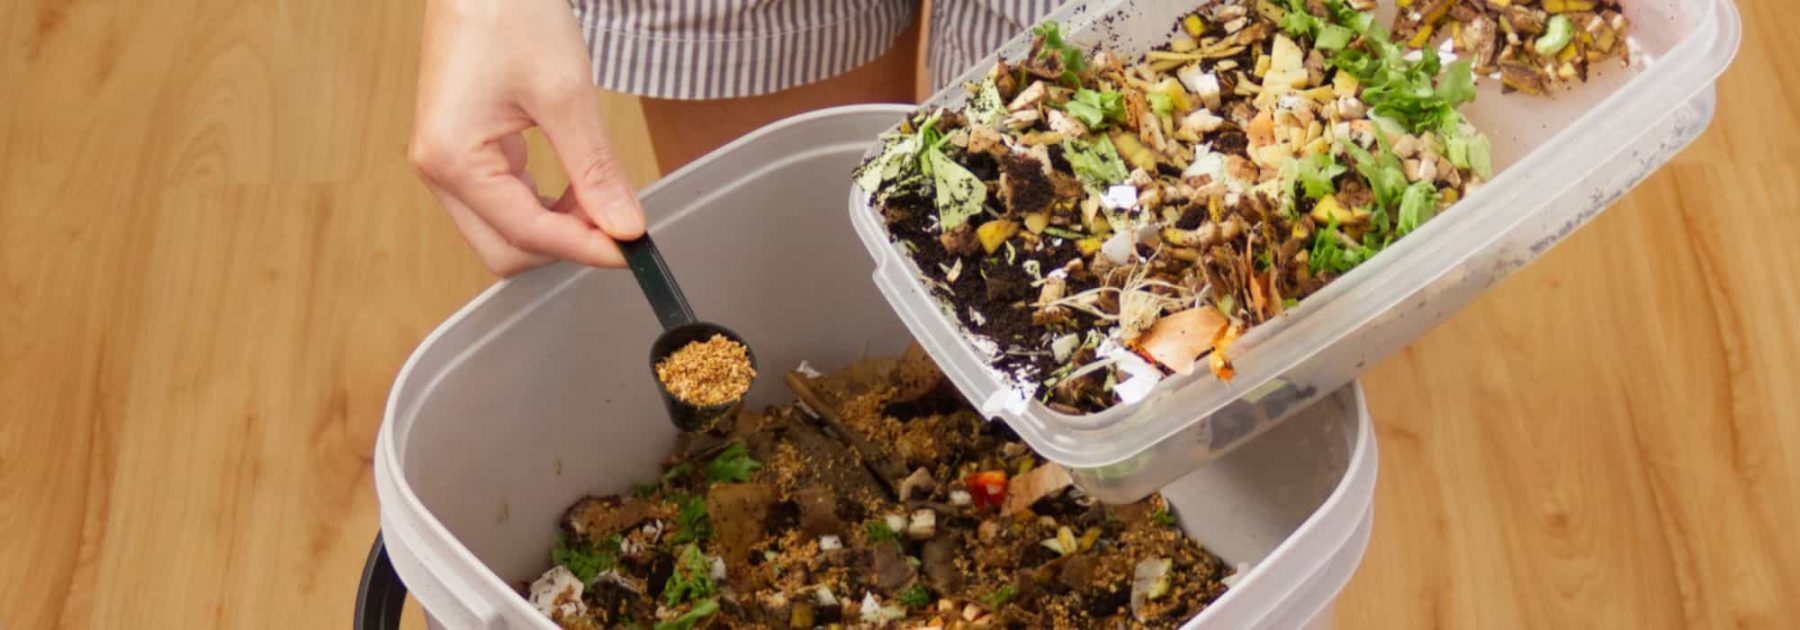 Composteur appartement : faire son compost en intérieur - Jardindeco